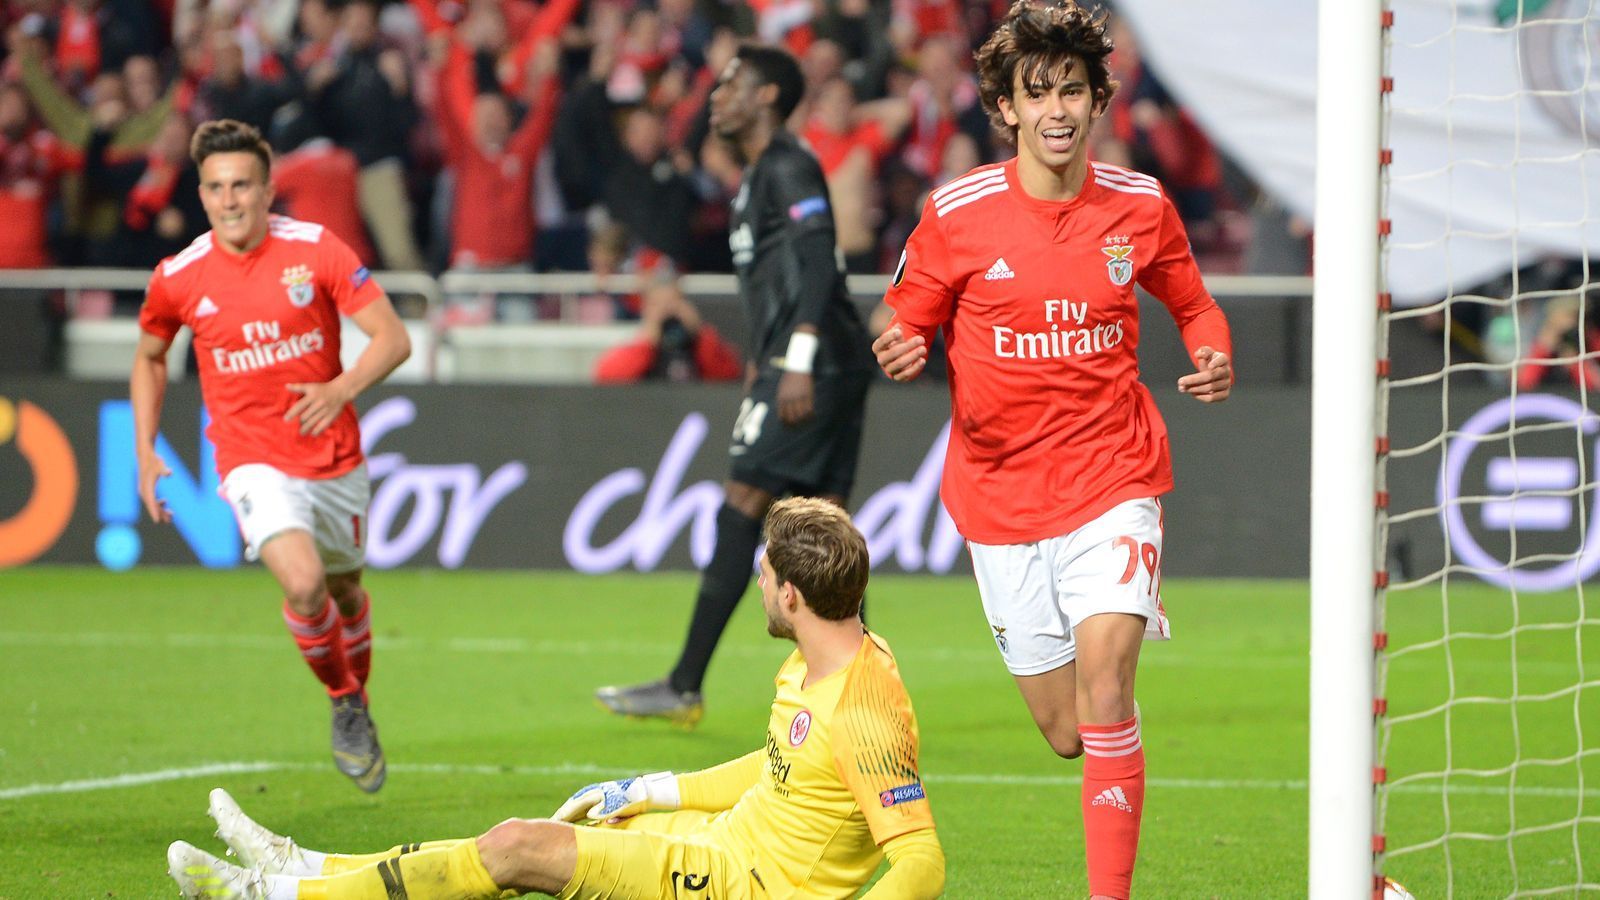 
                <strong>Platz 6 - Joao Felix (Benfica Lissabon)</strong><br>
                Alter bei seinem Dreierpack: 19,4 JahreSpiel gegen: Eintracht Frankfurt (11. April 2019)
              